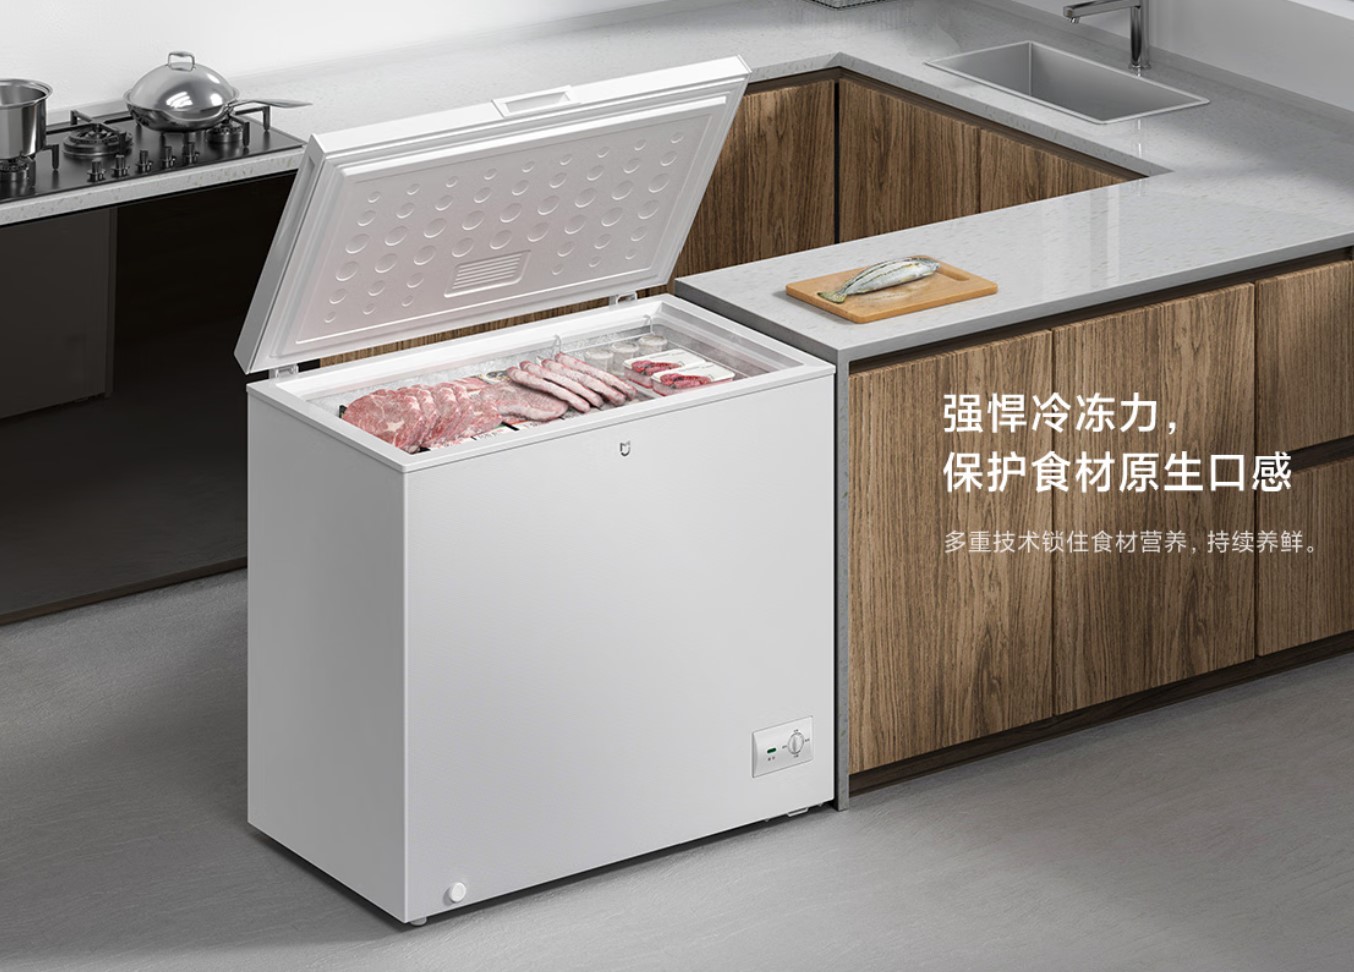 Xiaomi випустила морозилку MIJIA Freezer 203L з чотиришвидкісним регульованим температурним режимом